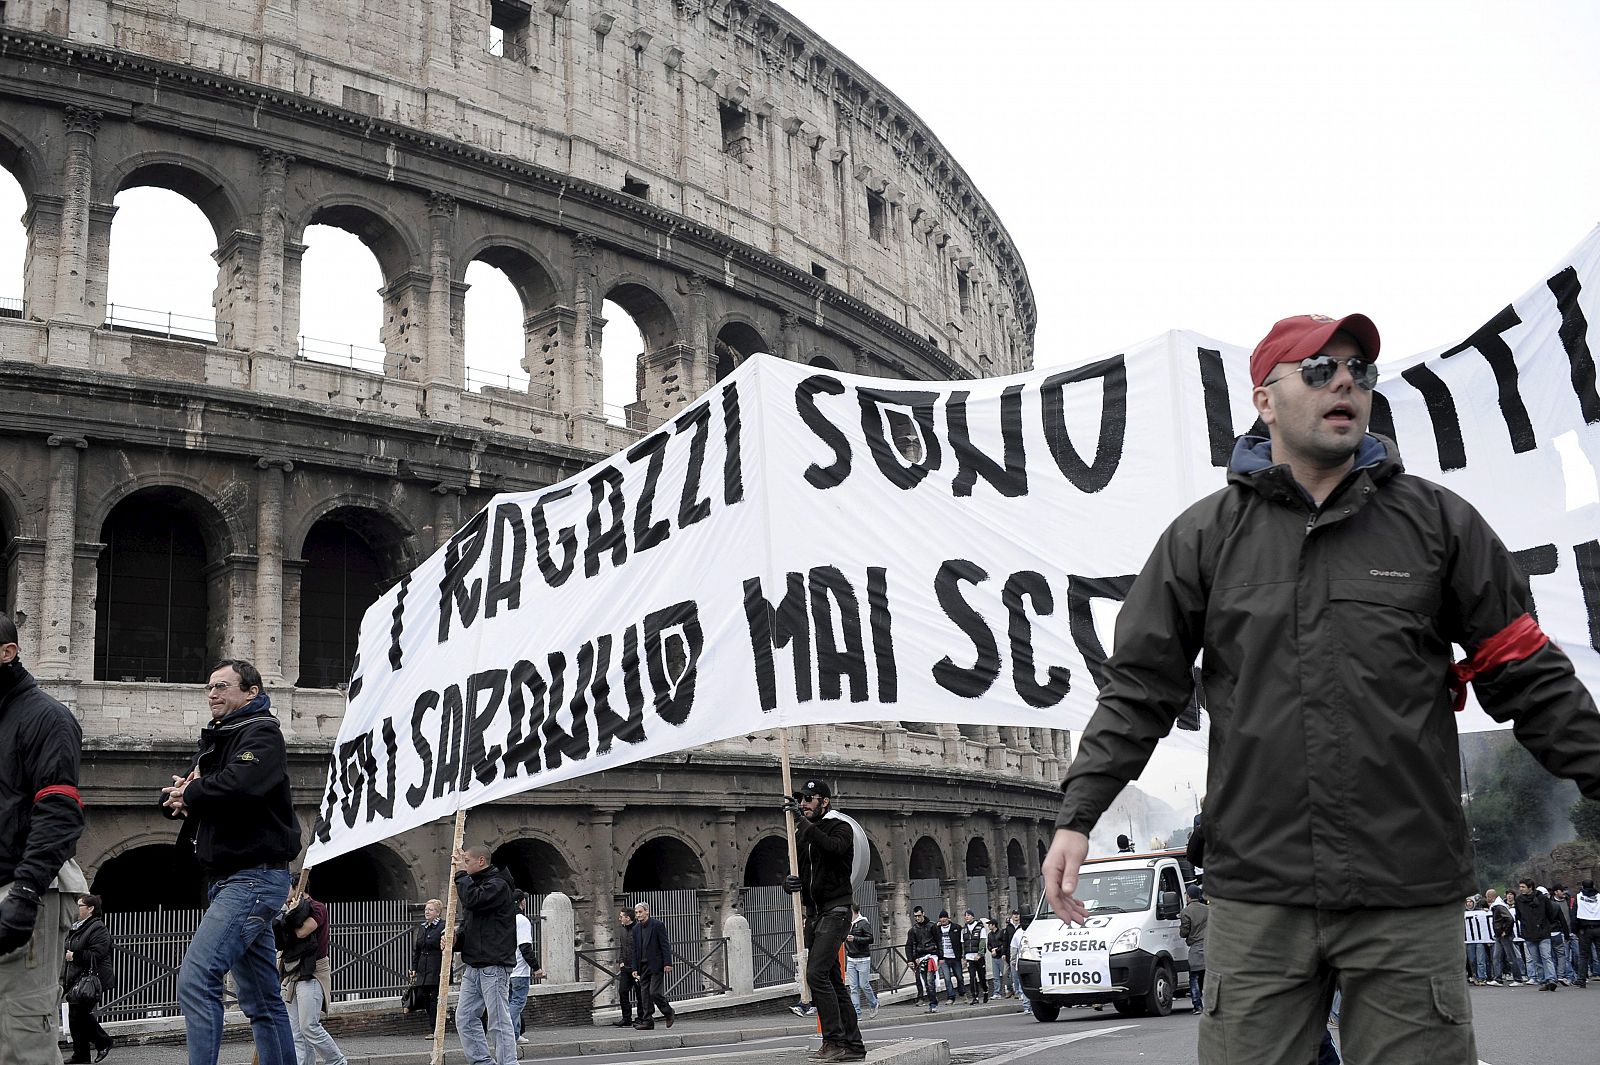 ILos hinchas se manifiestan delante del Coliseo en Roma contra la tarjeta que tendrán que mostrar para poder acceder a los estadios.